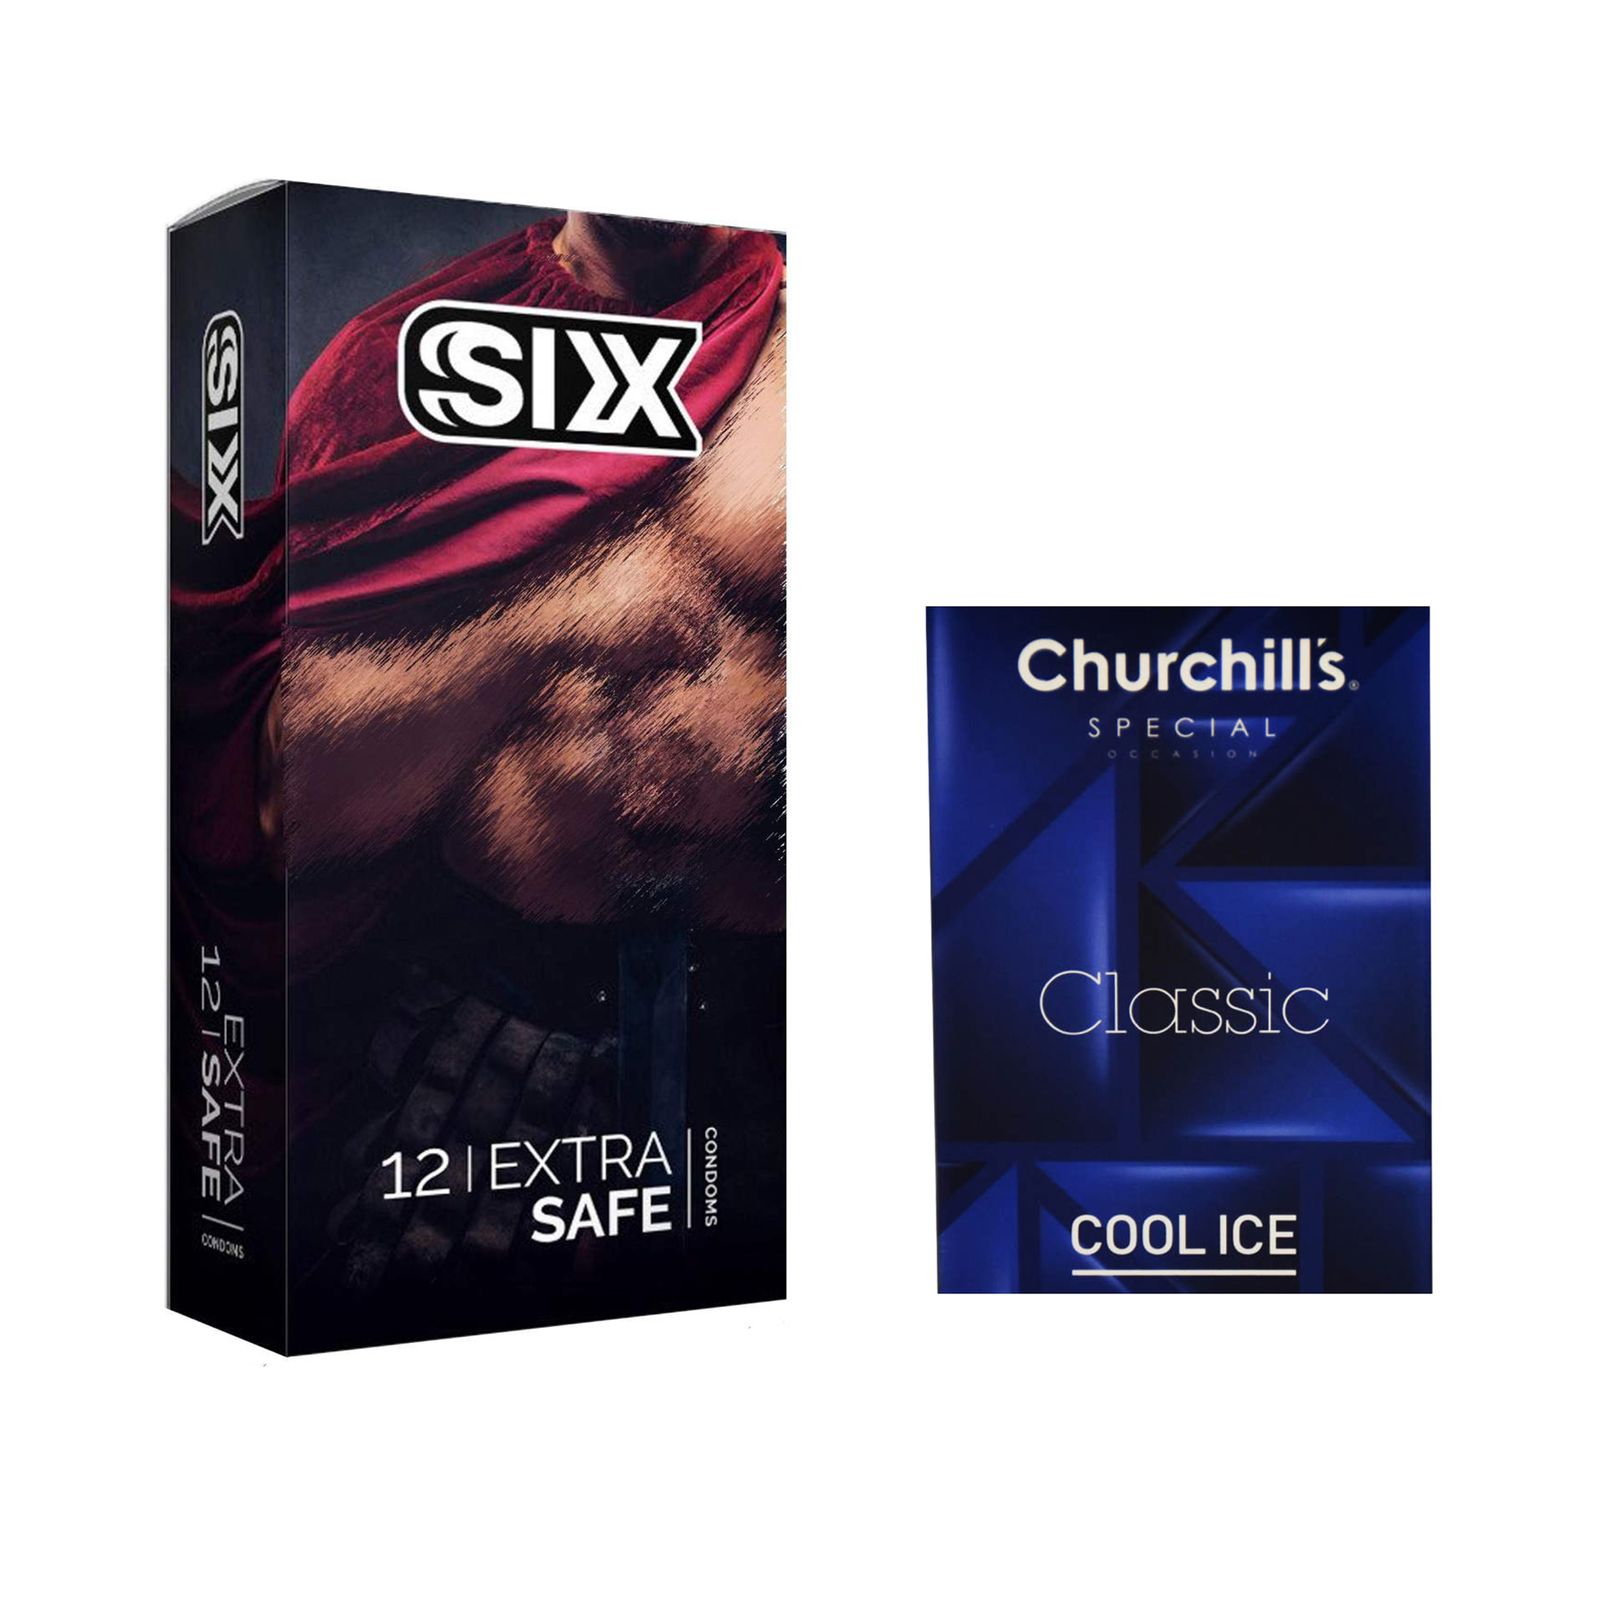 کاندوم سیکس مدل Max Safety بسته 12 عددی به همراه کاندوم چرچیلز مدل Cool Ice بسته 3 عددی -  - 1